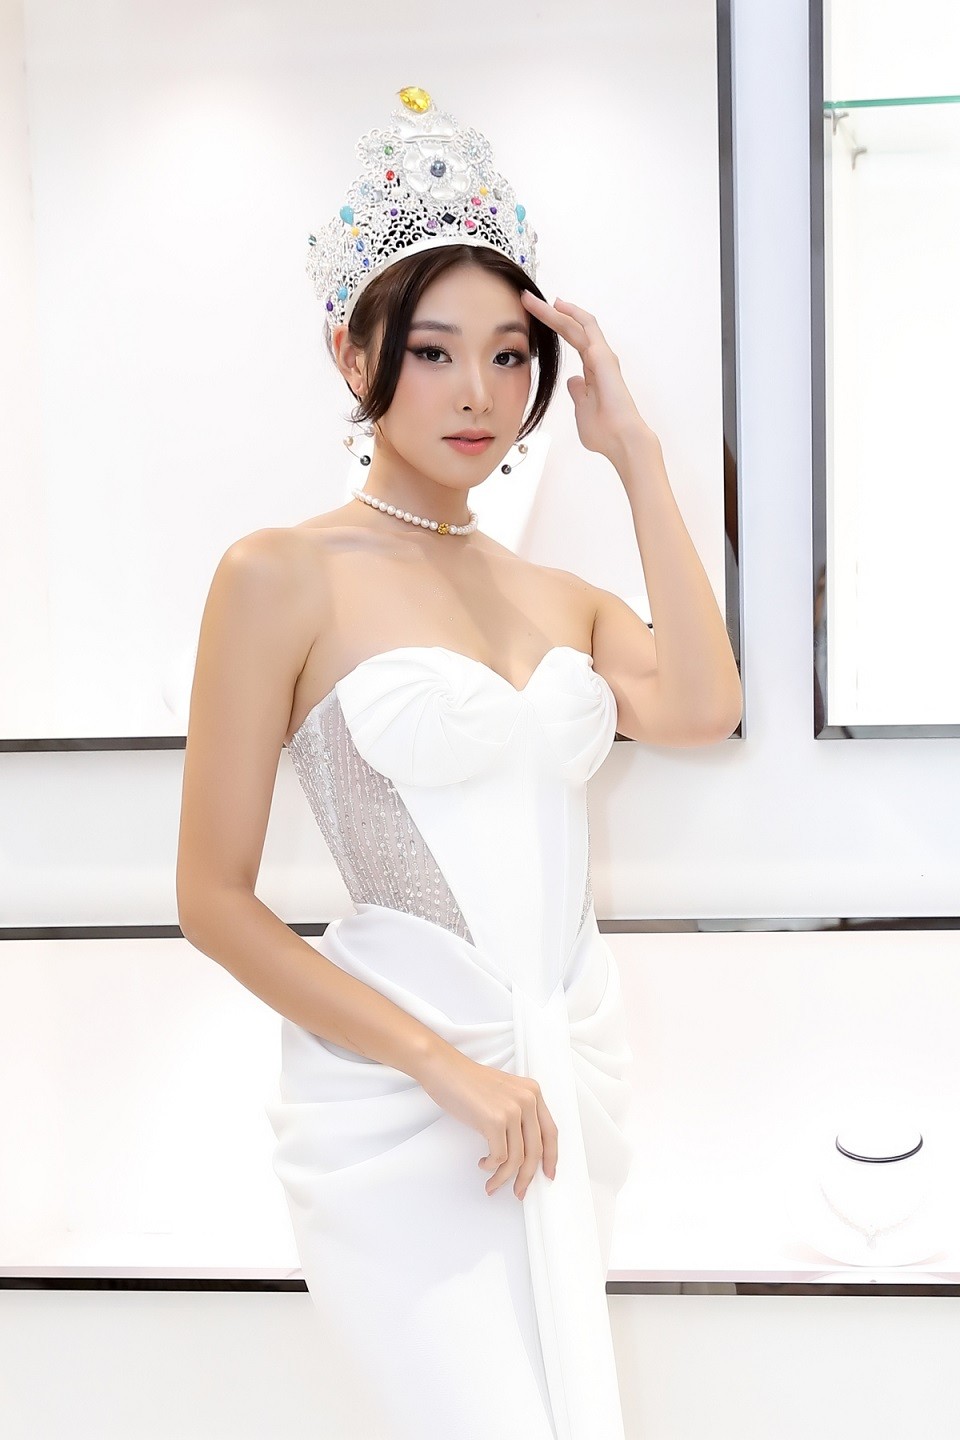 Nhà thiết kế sinh năm 1990 chia sẻ, khi anh đăng hình ảnh chiếc váy này trên Instagram, Mina Sue đã rất thích và liên hệ với anh để thử chiếc đầm cho một sự kiện quan trọng tại Việt Nam. 